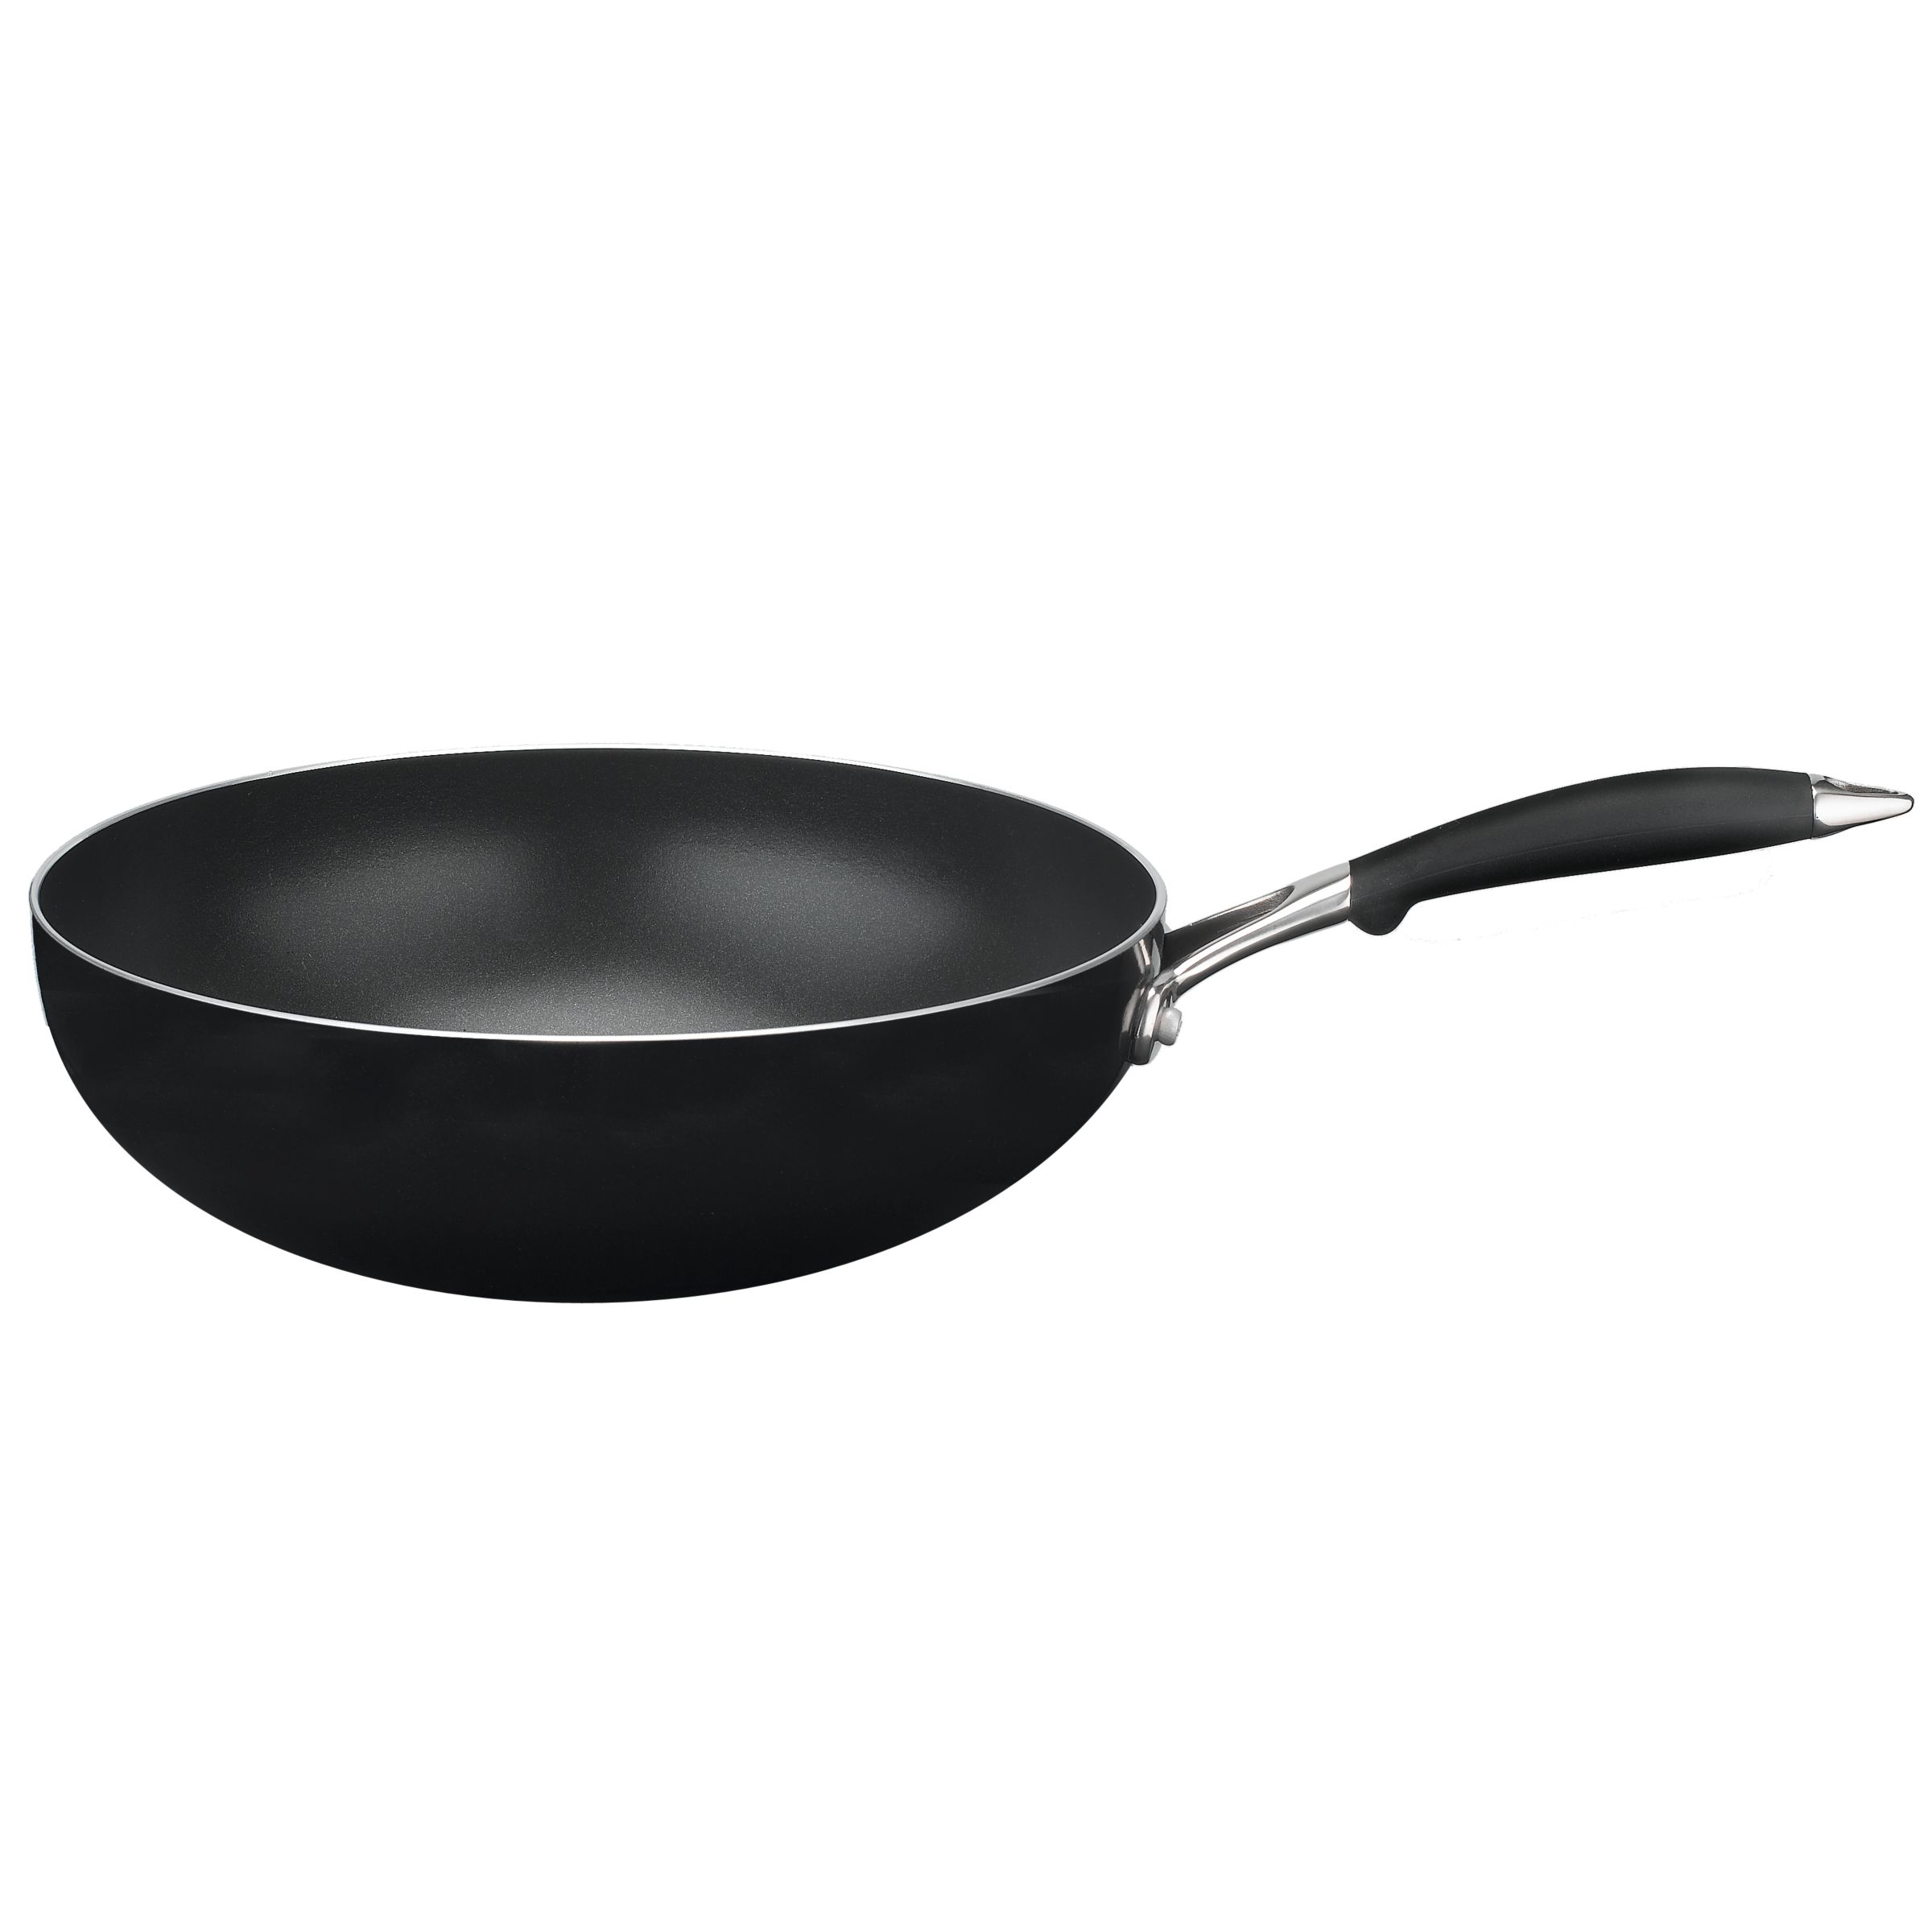 John Lewis `The Pan` Stir Fry Pan, 28cm